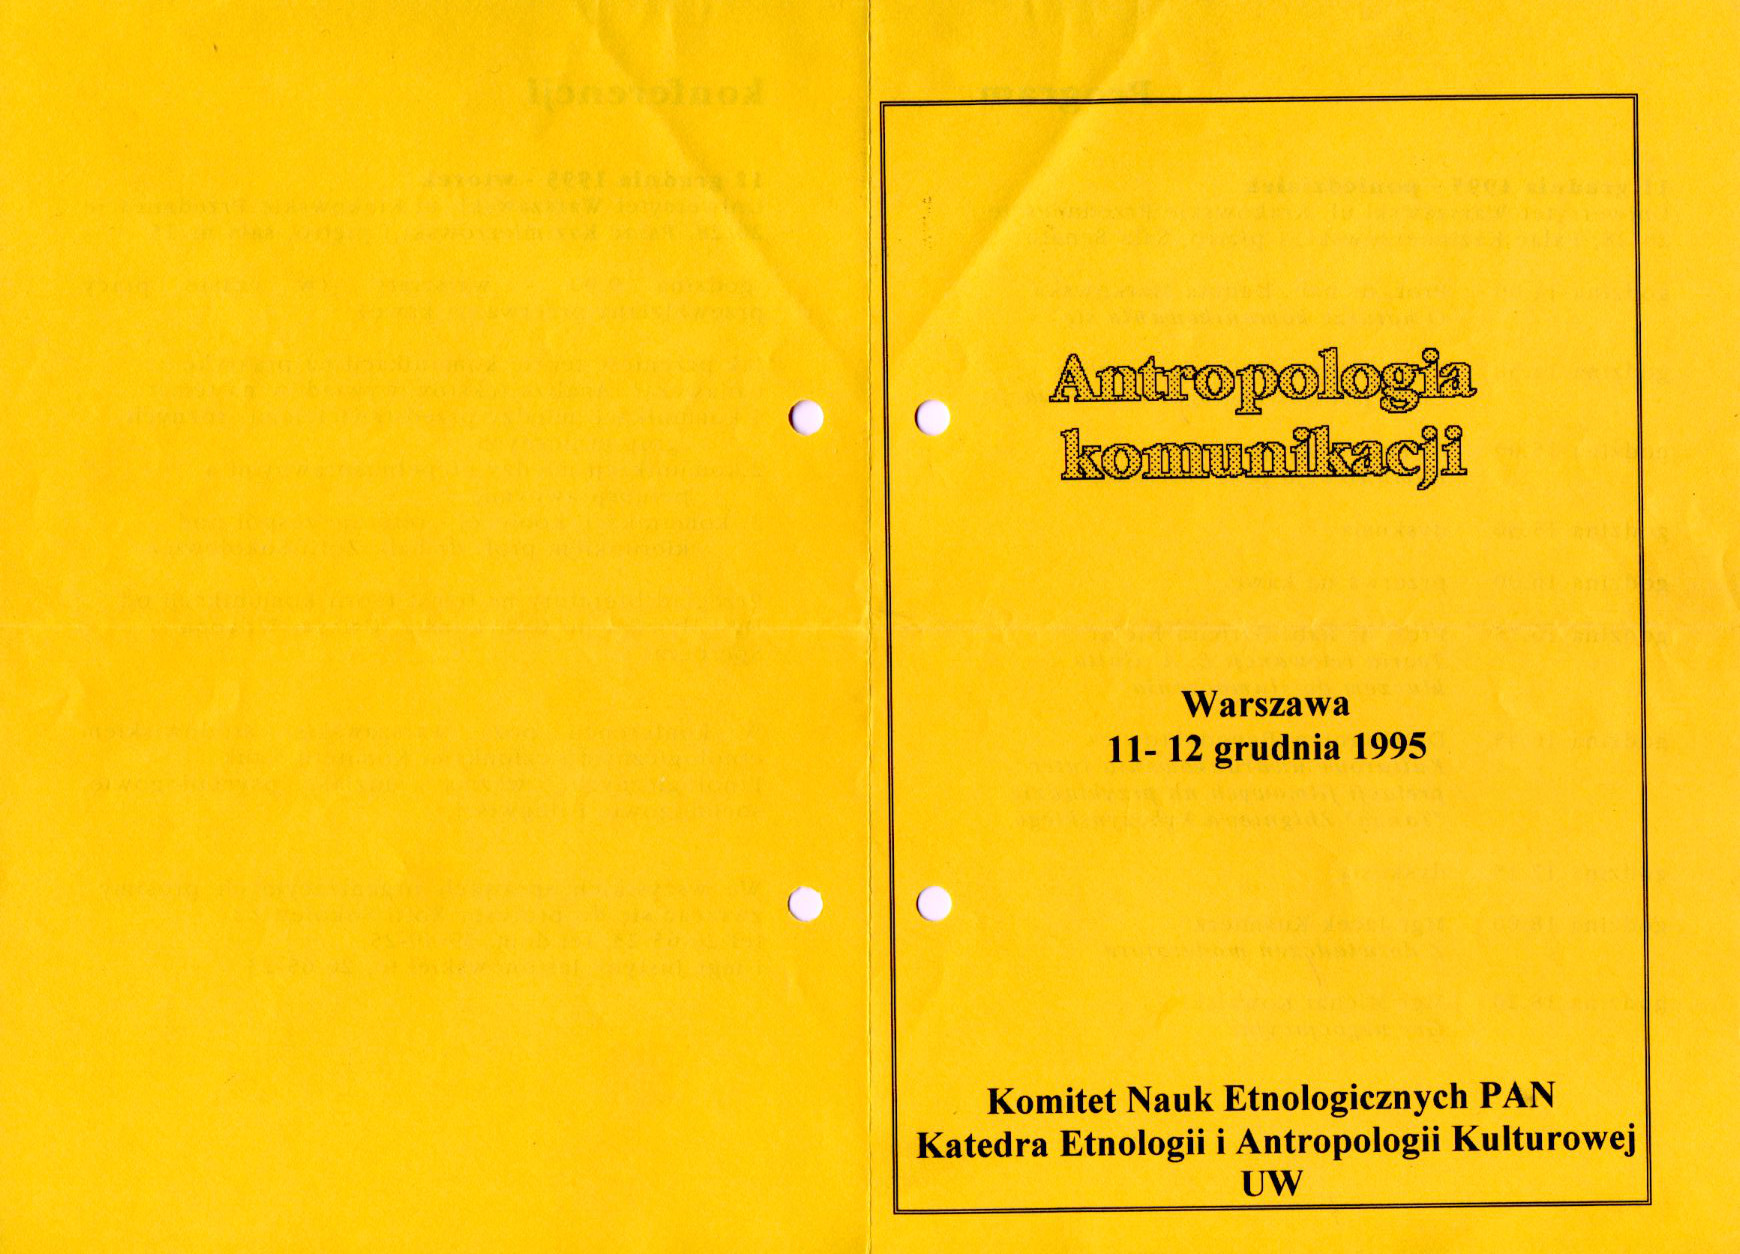 konferencja-1995-Warszawa-program1